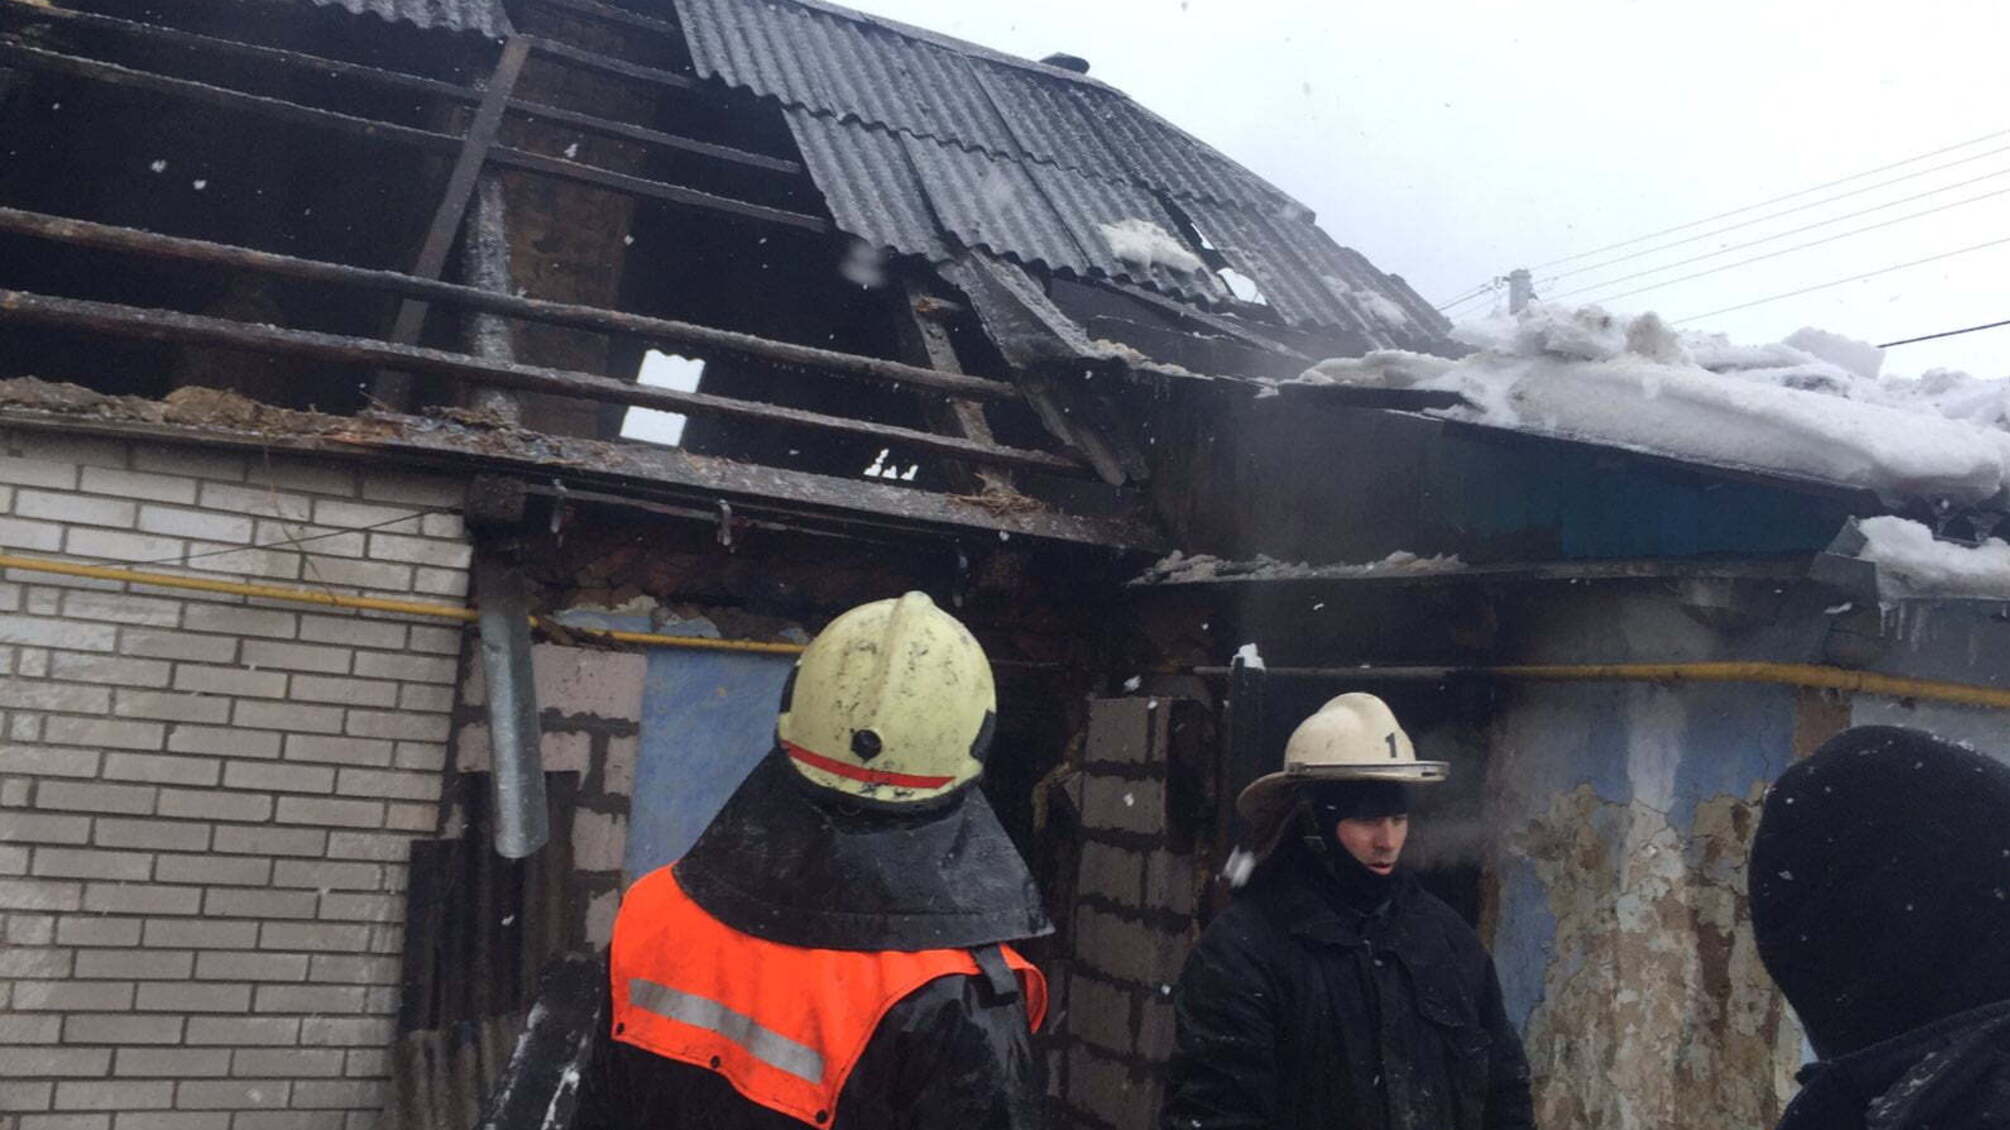 Київська область: на пожежі загинула п’ятирічна дитина